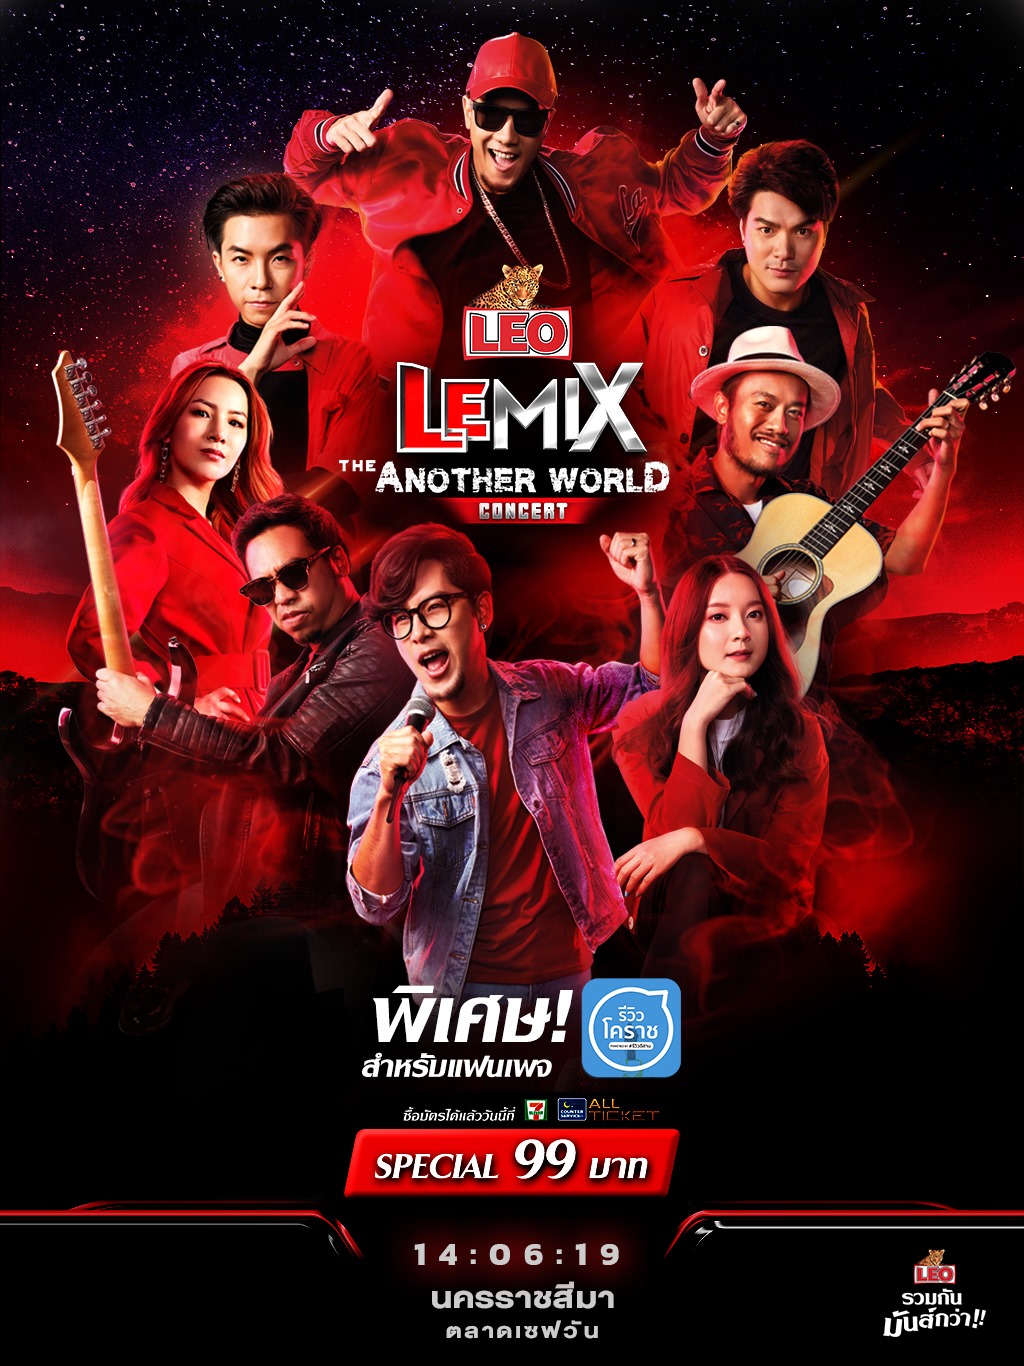 LEO LEMIX : The Another World Concert ที่ตลาดเซฟวัน นครราชสีมา 14 มิถุนายน 2562